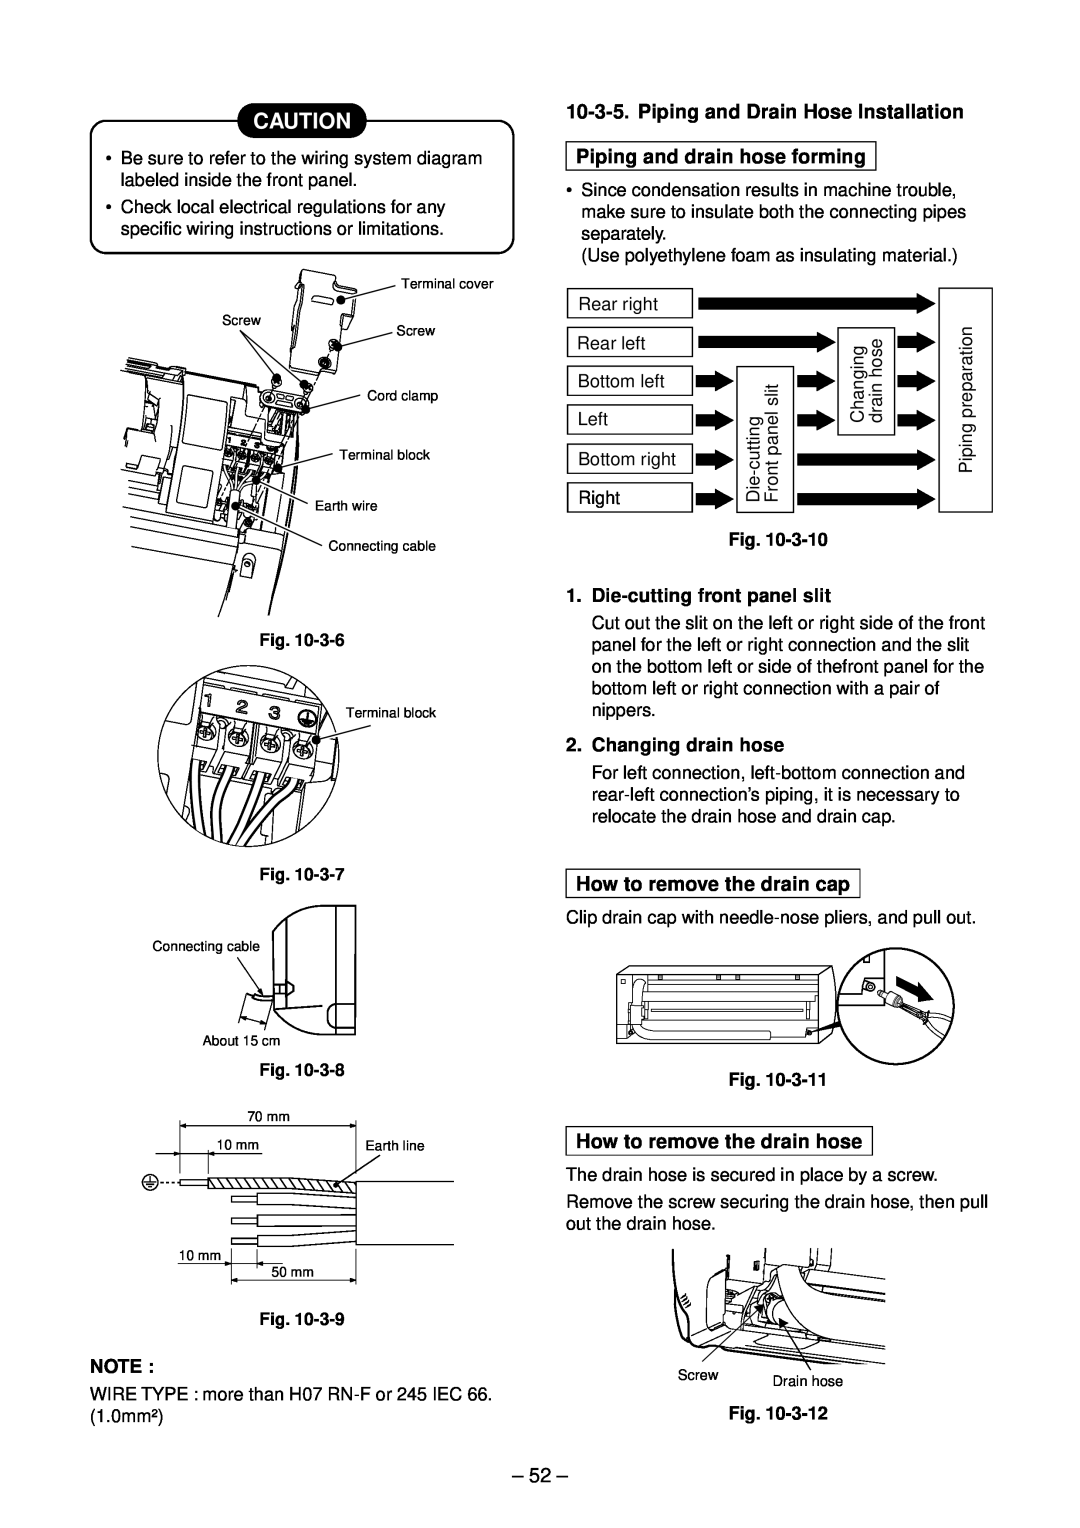 Toshiba RAS-16GAVP-E Piping and Drain Hose Installation, Piping and drain hose forming, How to remove the drain cap 